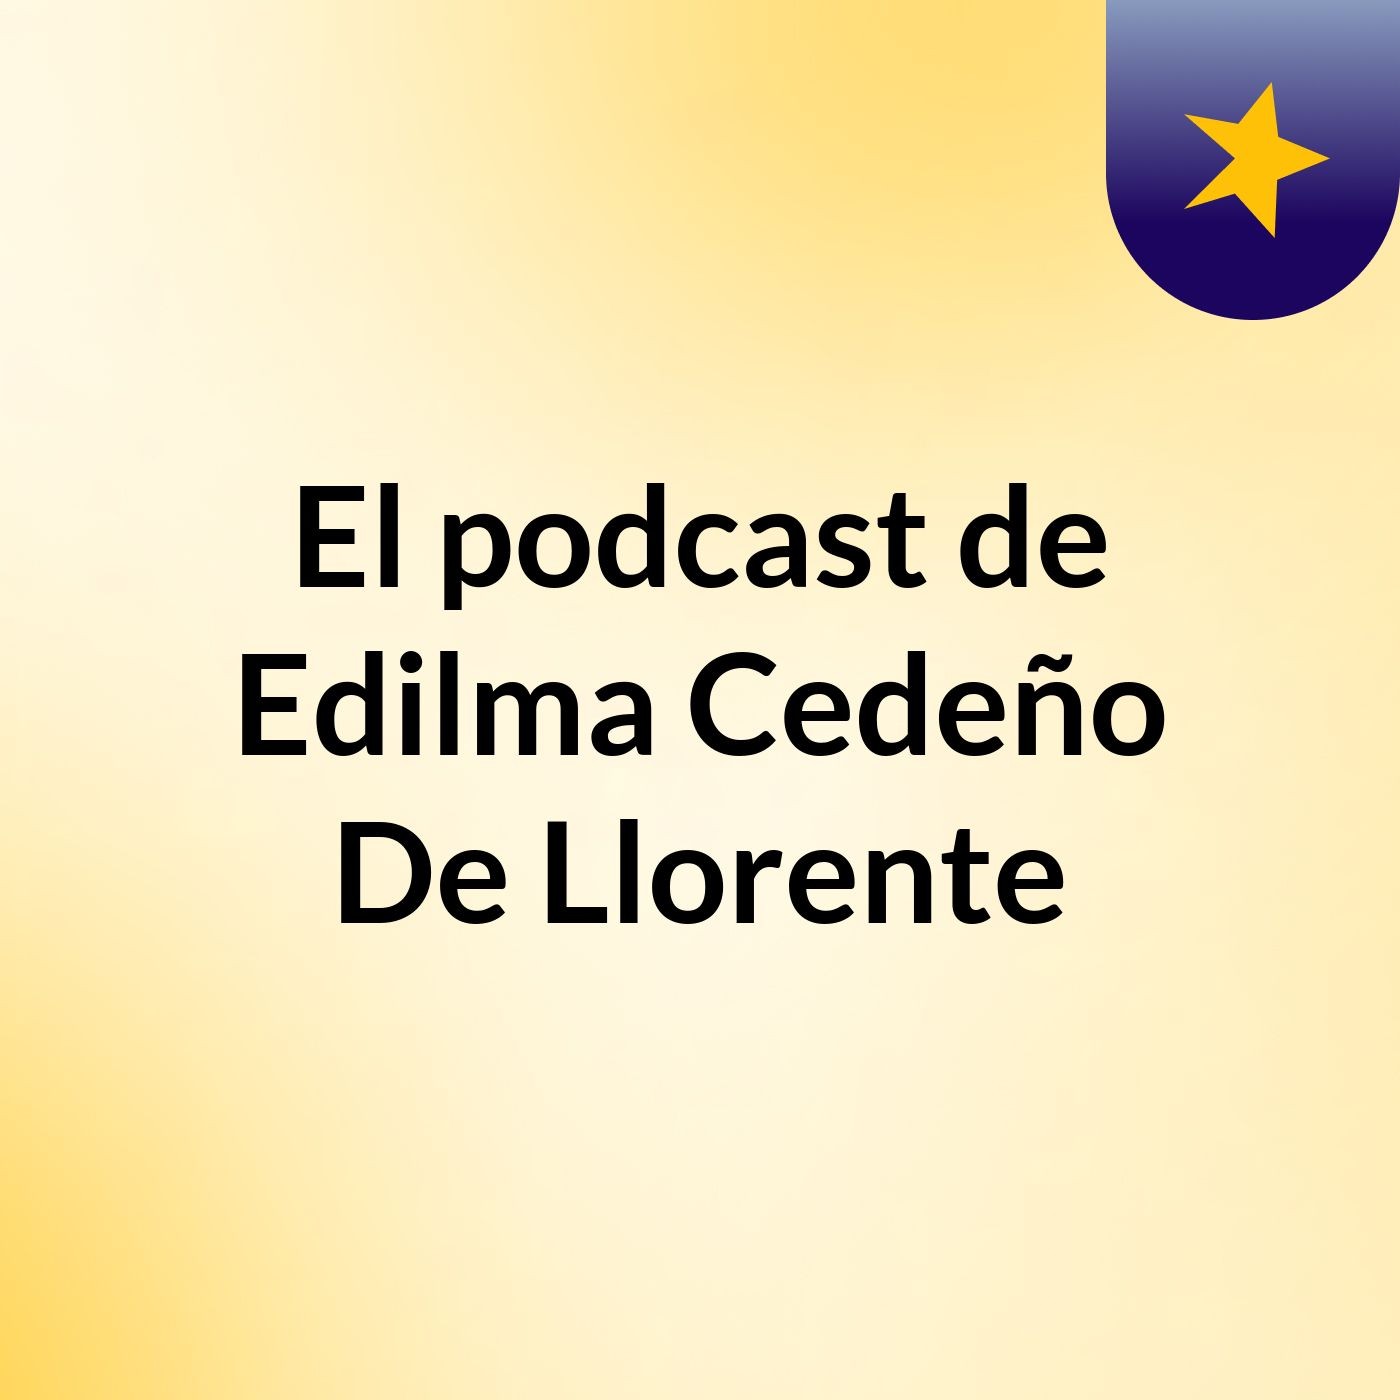 El podcast de Edilma Cedeño De Llorente